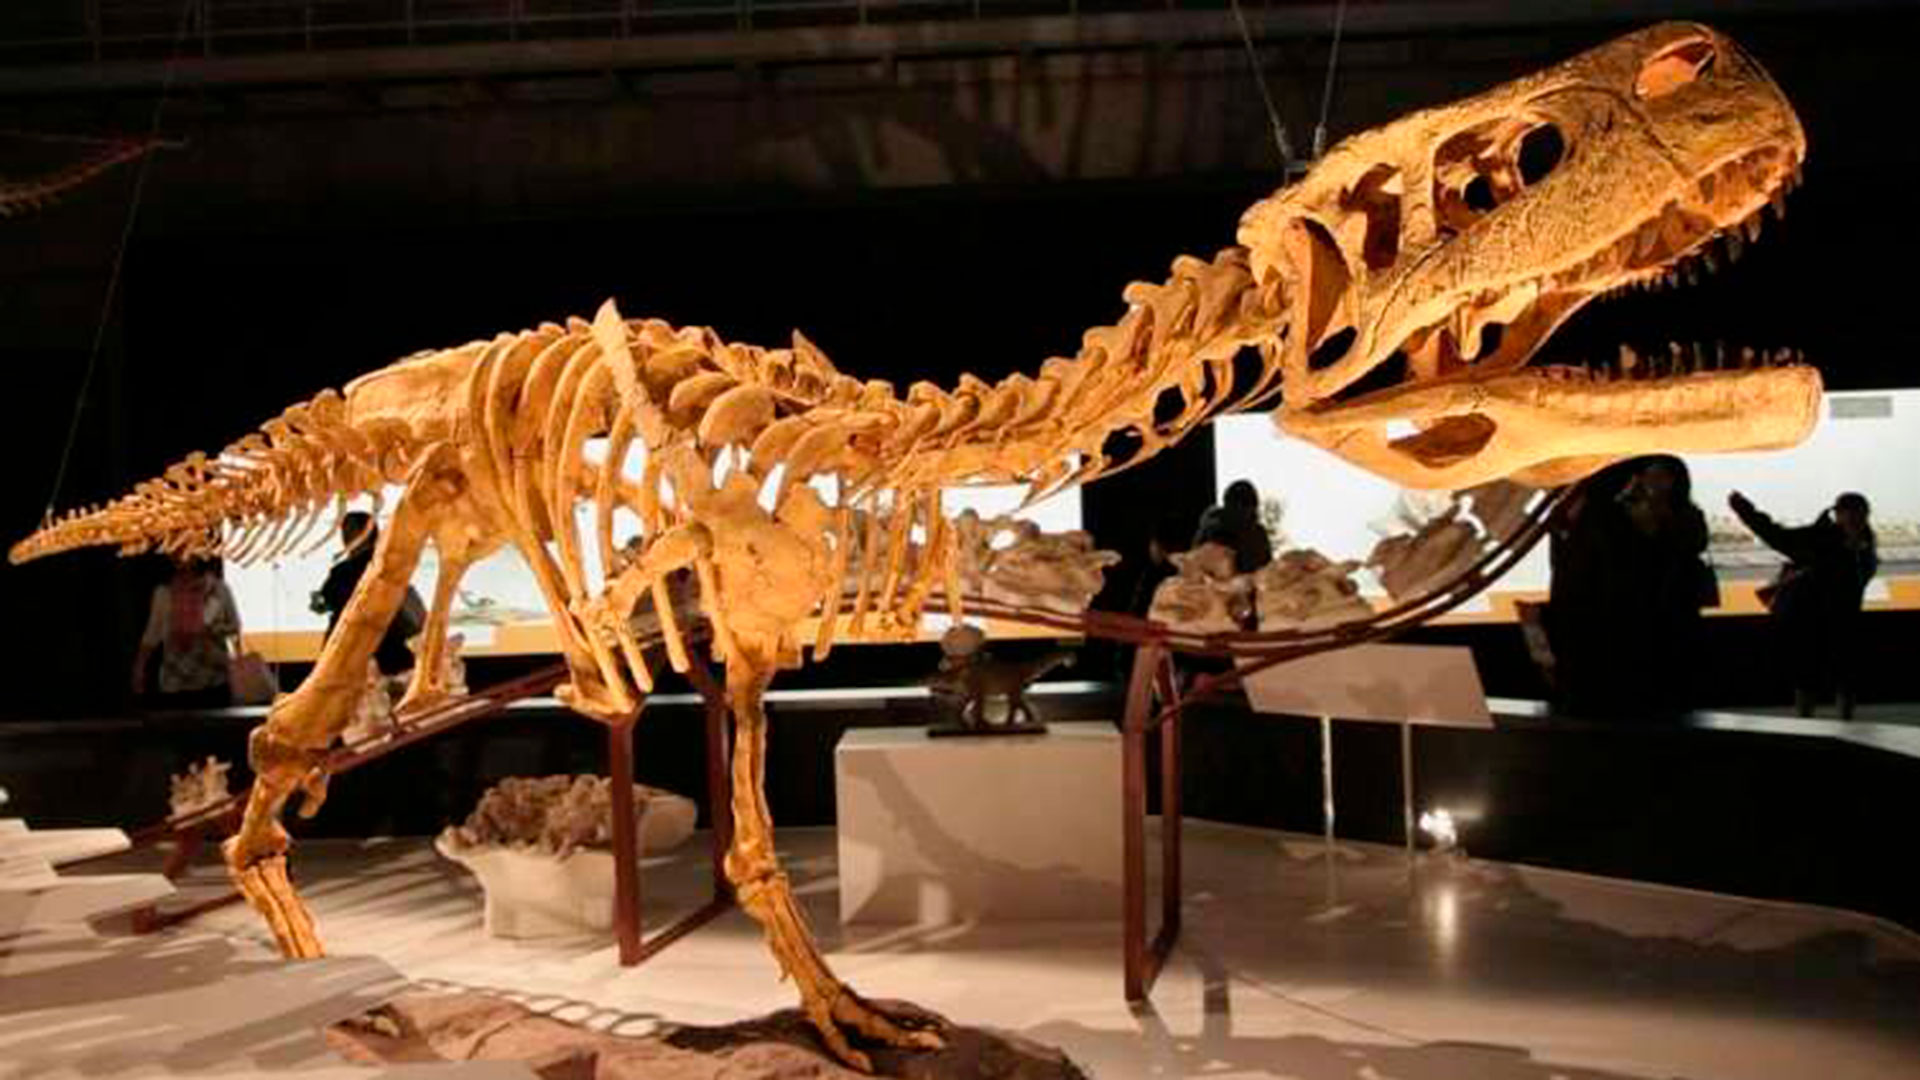 Los abelisaurios tenían extremidades anteriores muy reducidas (Credito: Kabacchi)